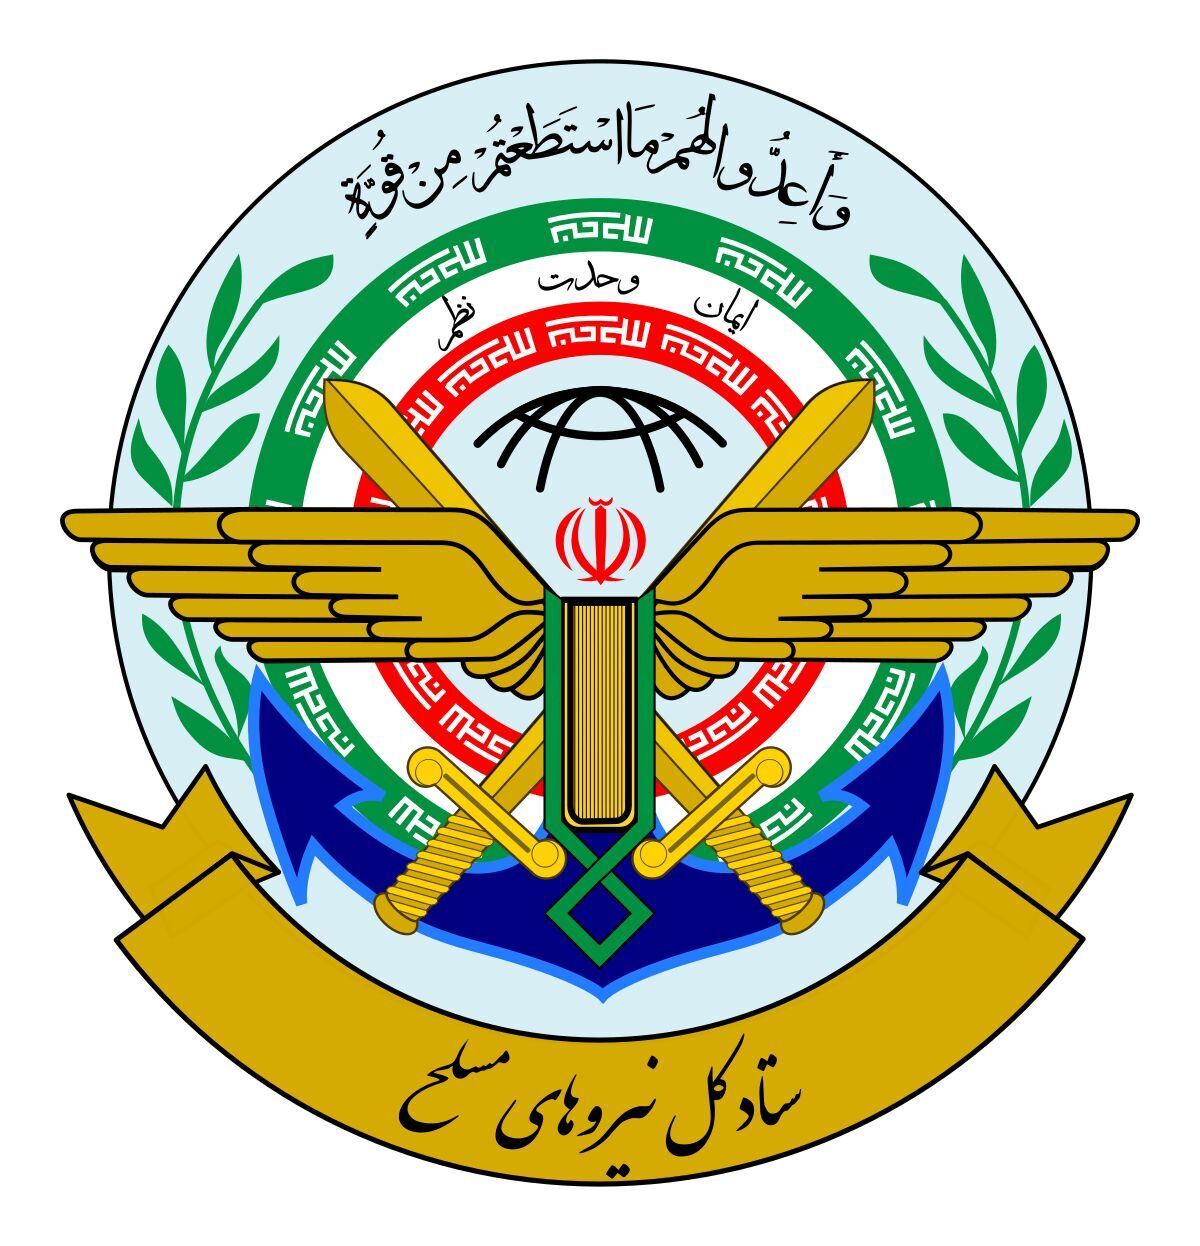 هيئة الأركان المشتركة للقوات المسلحة الإيرانية: جهاد التبیین يحبط مخططات العدو 